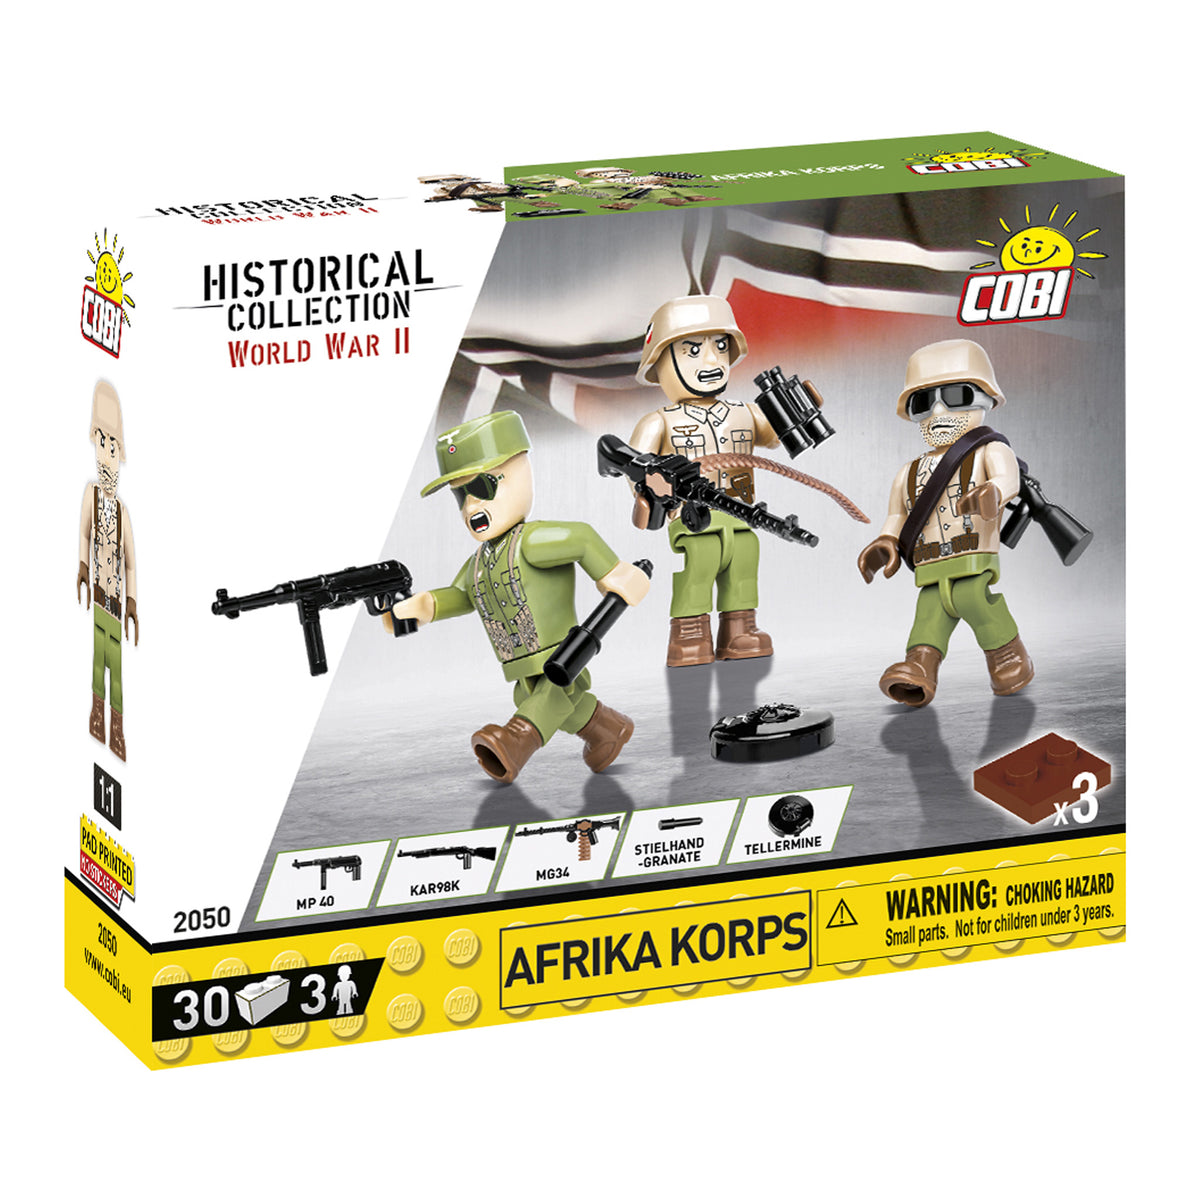 2050 - Afrika Korps Soldaten (Cobi)